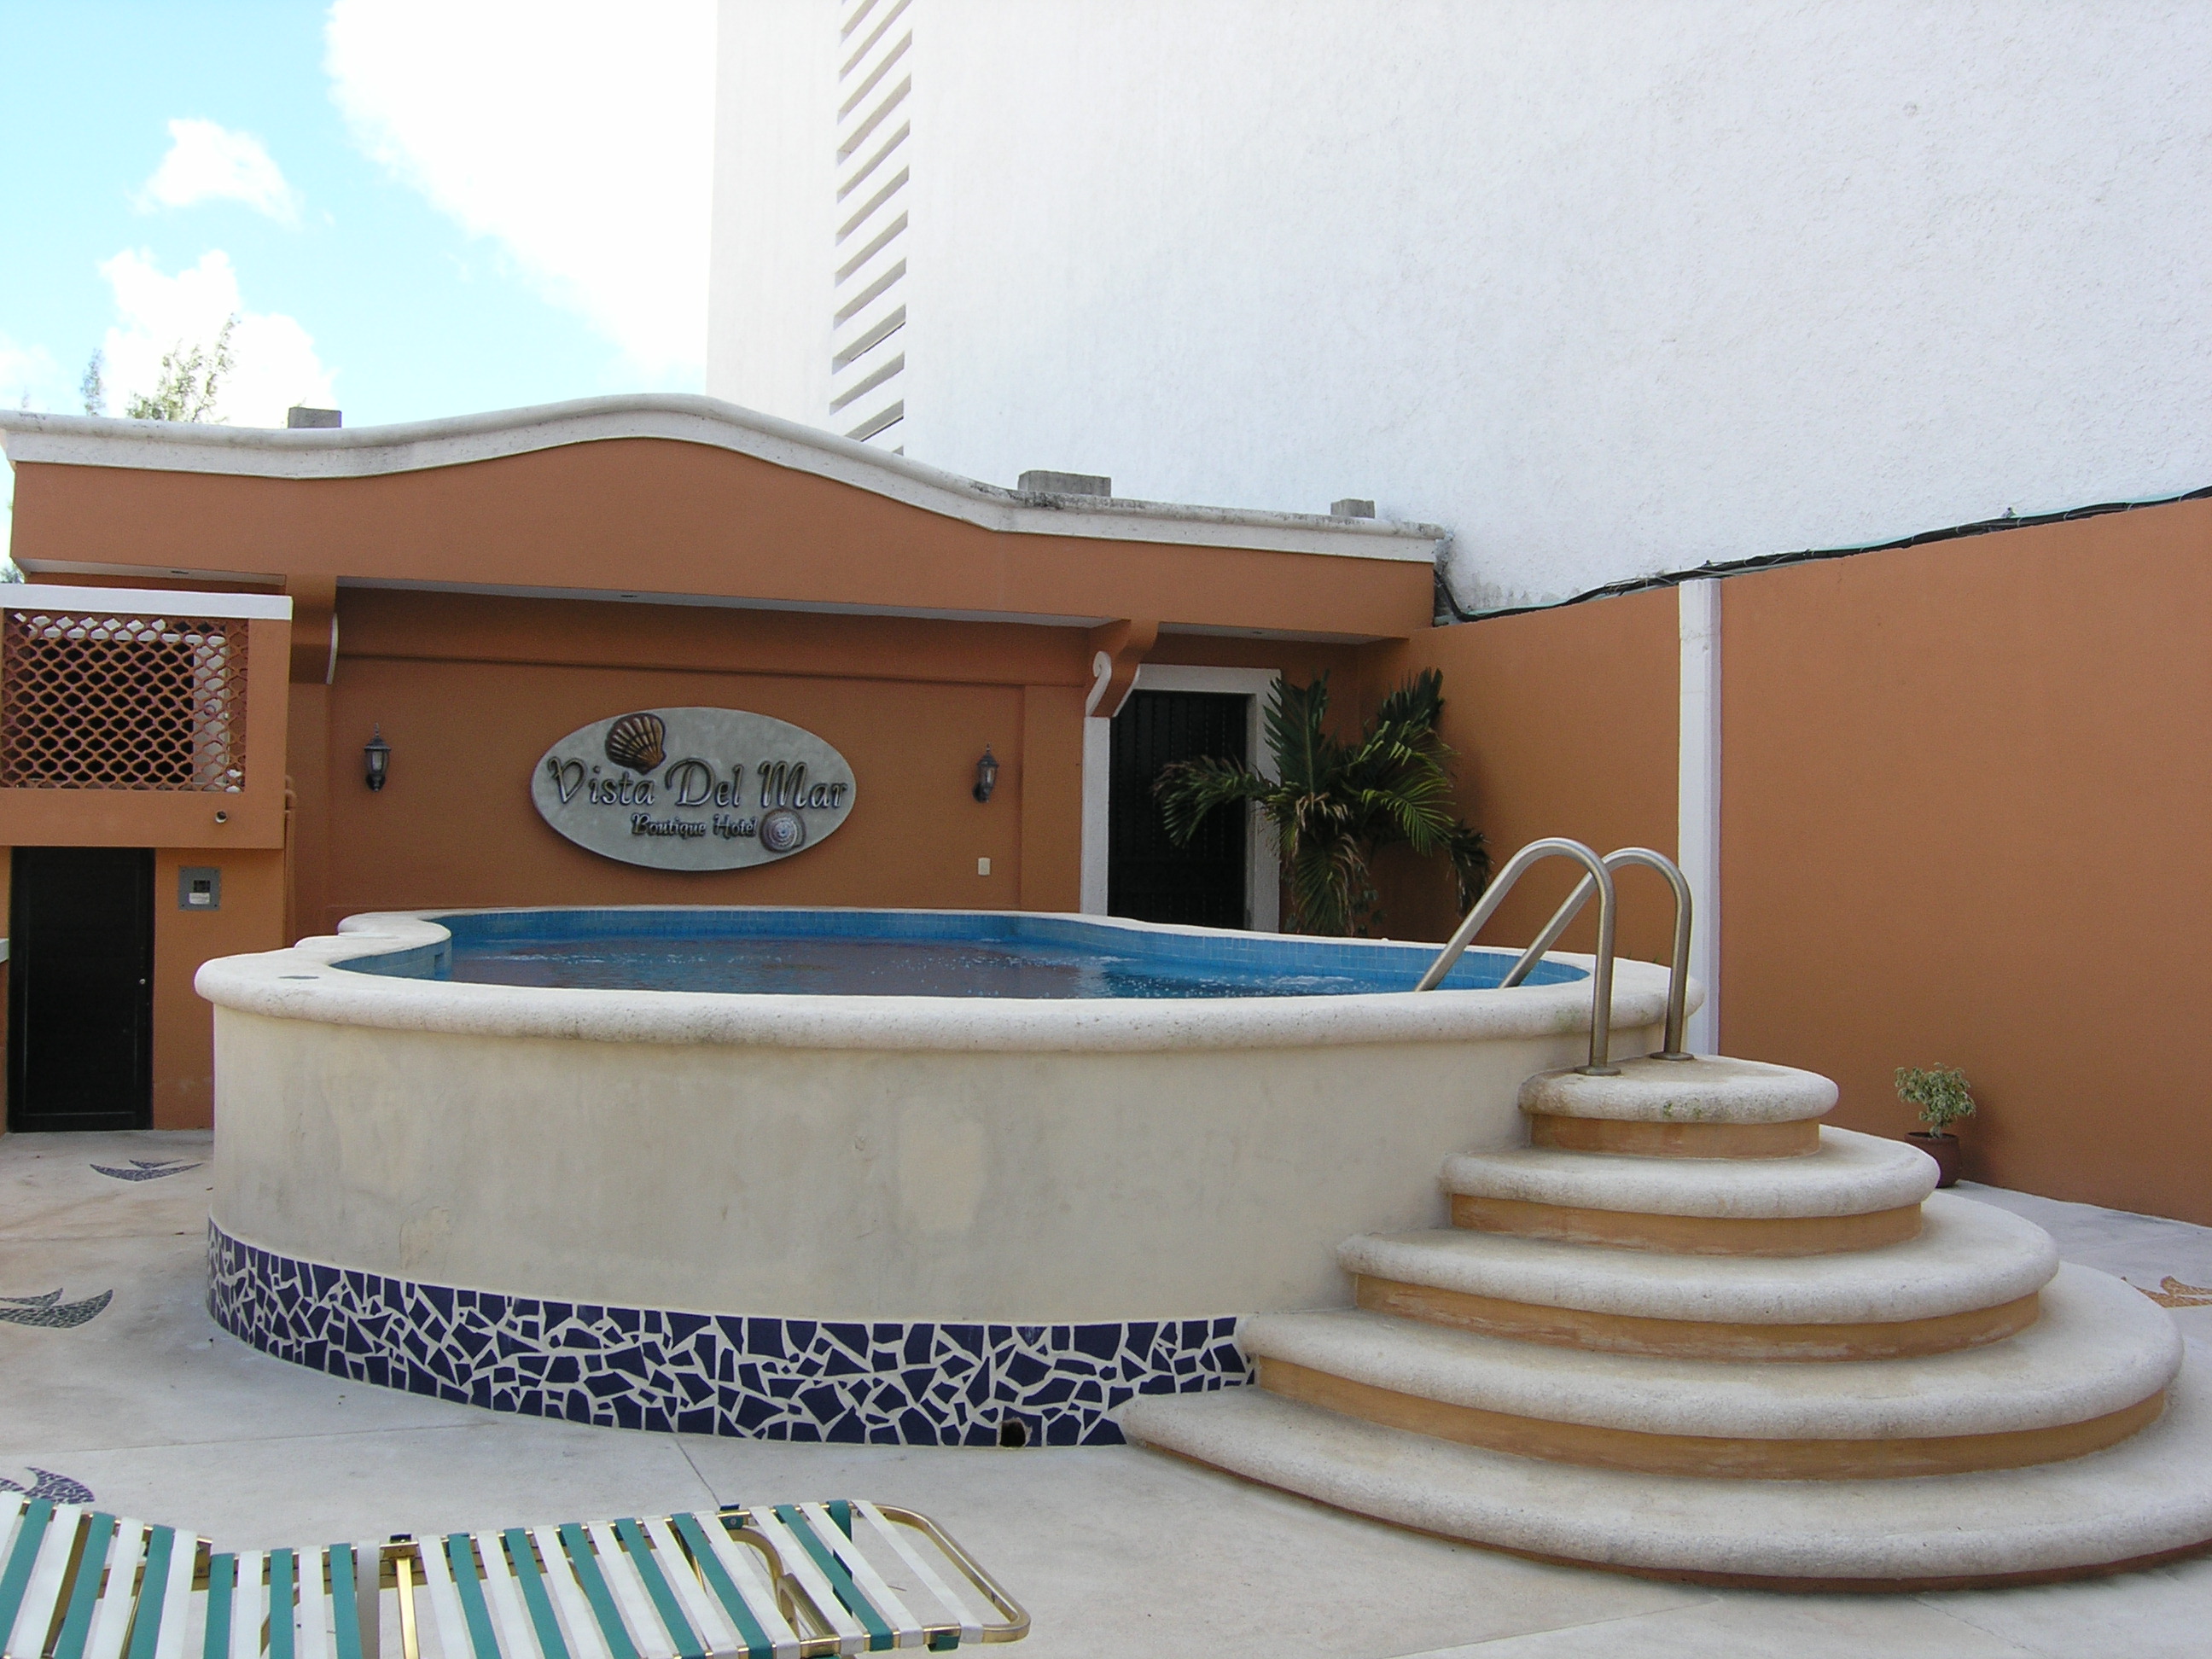 Hotel Vista Del Mar's pool